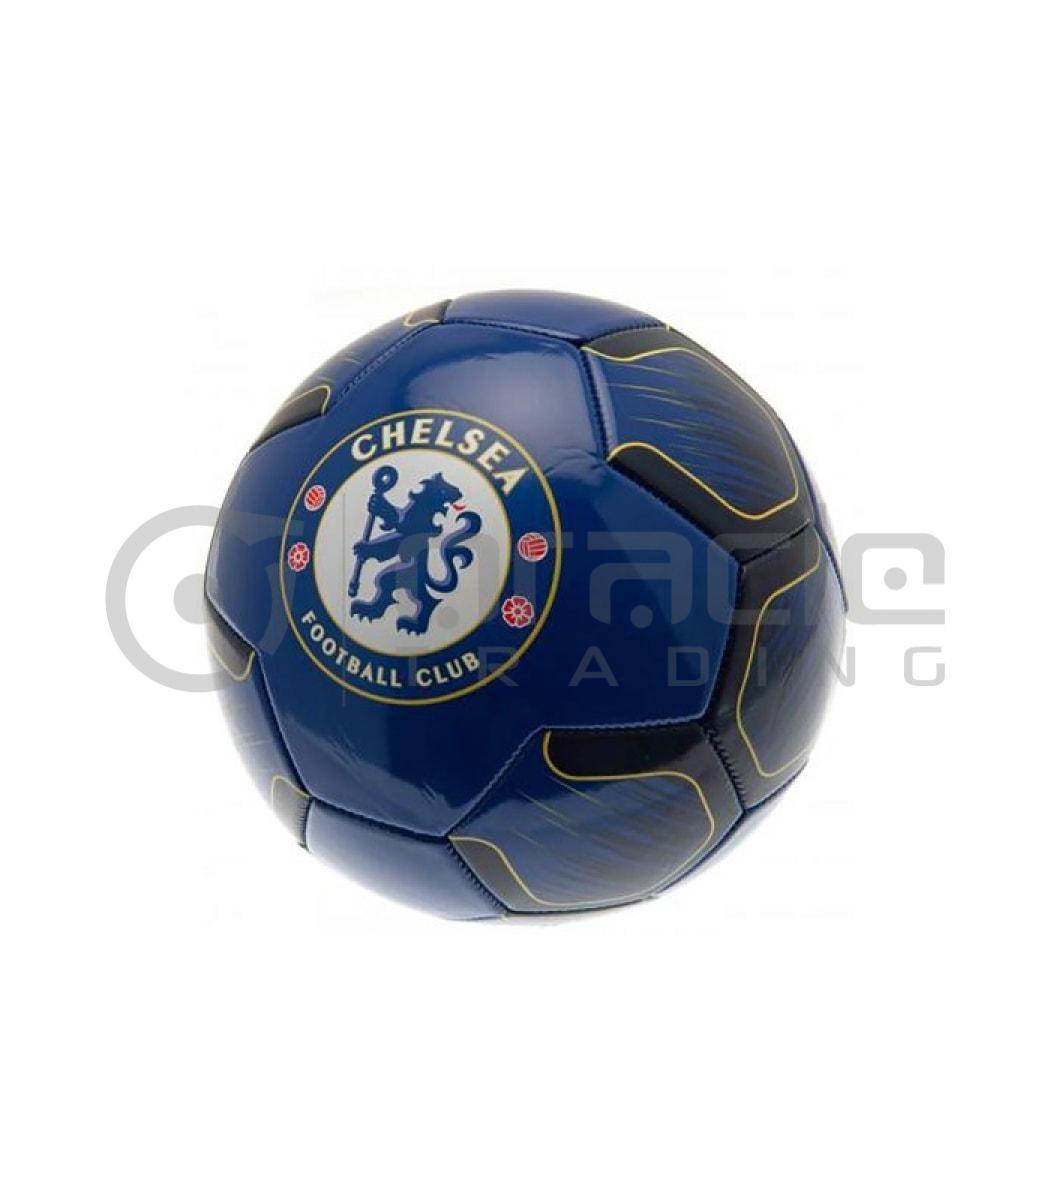 Chelsea Large Soccer Ball